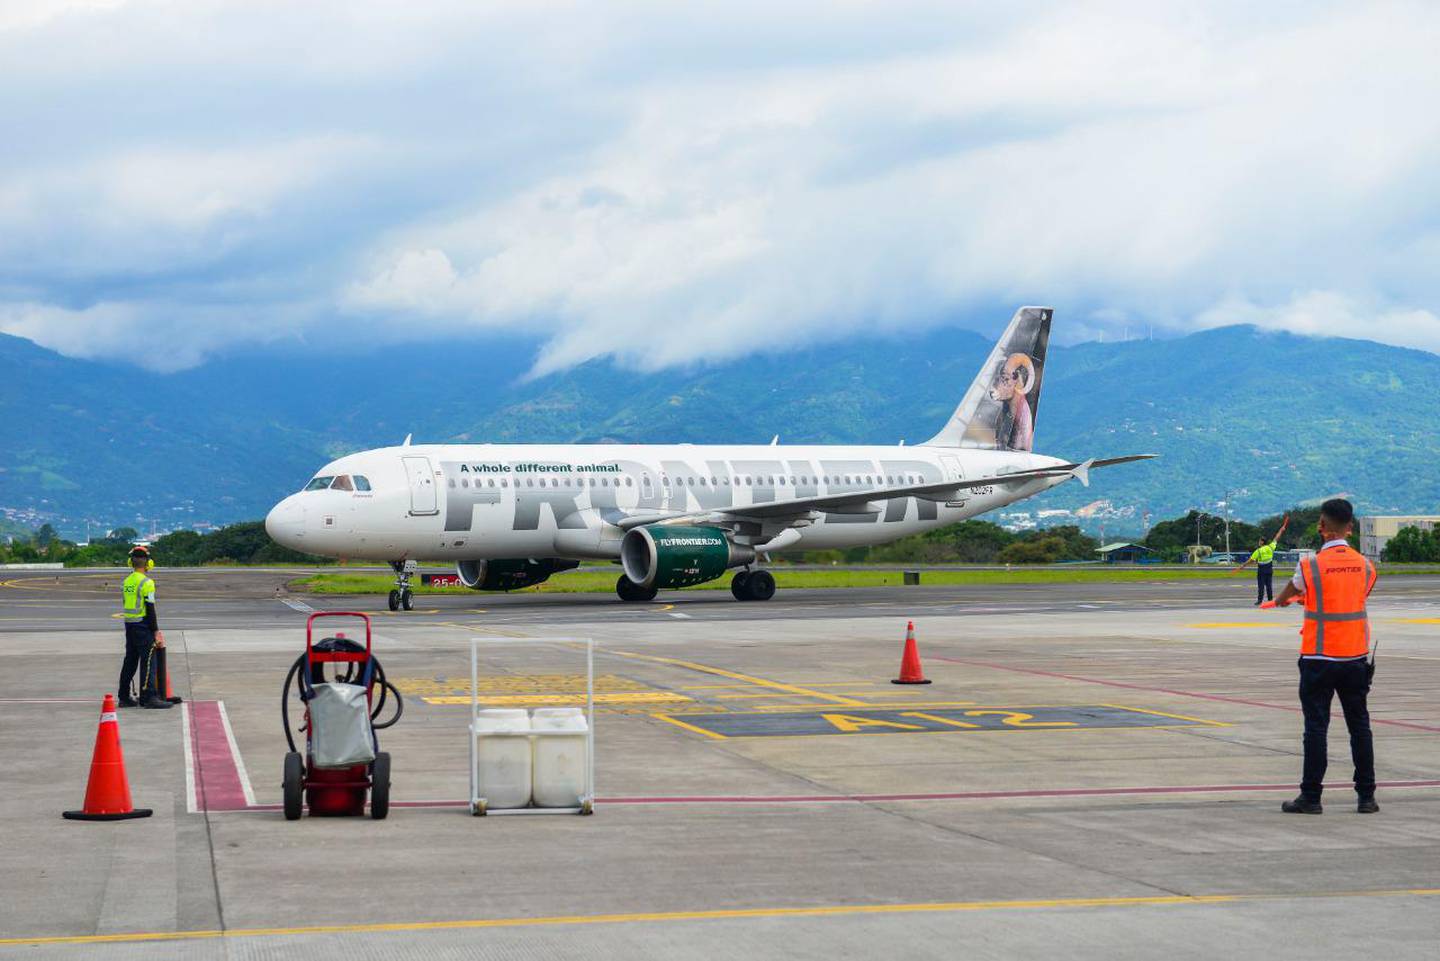 La aerolínea de bajo costo abrió un vuelo directo desde Orlando al Juan Santamaría, el 1.° de julio. En noviembre ampliará su operación en Costa Rica, con la llegada de otro vuelo directo al Daniel Oduber, en Liberia. Foto: Cortesía ICT